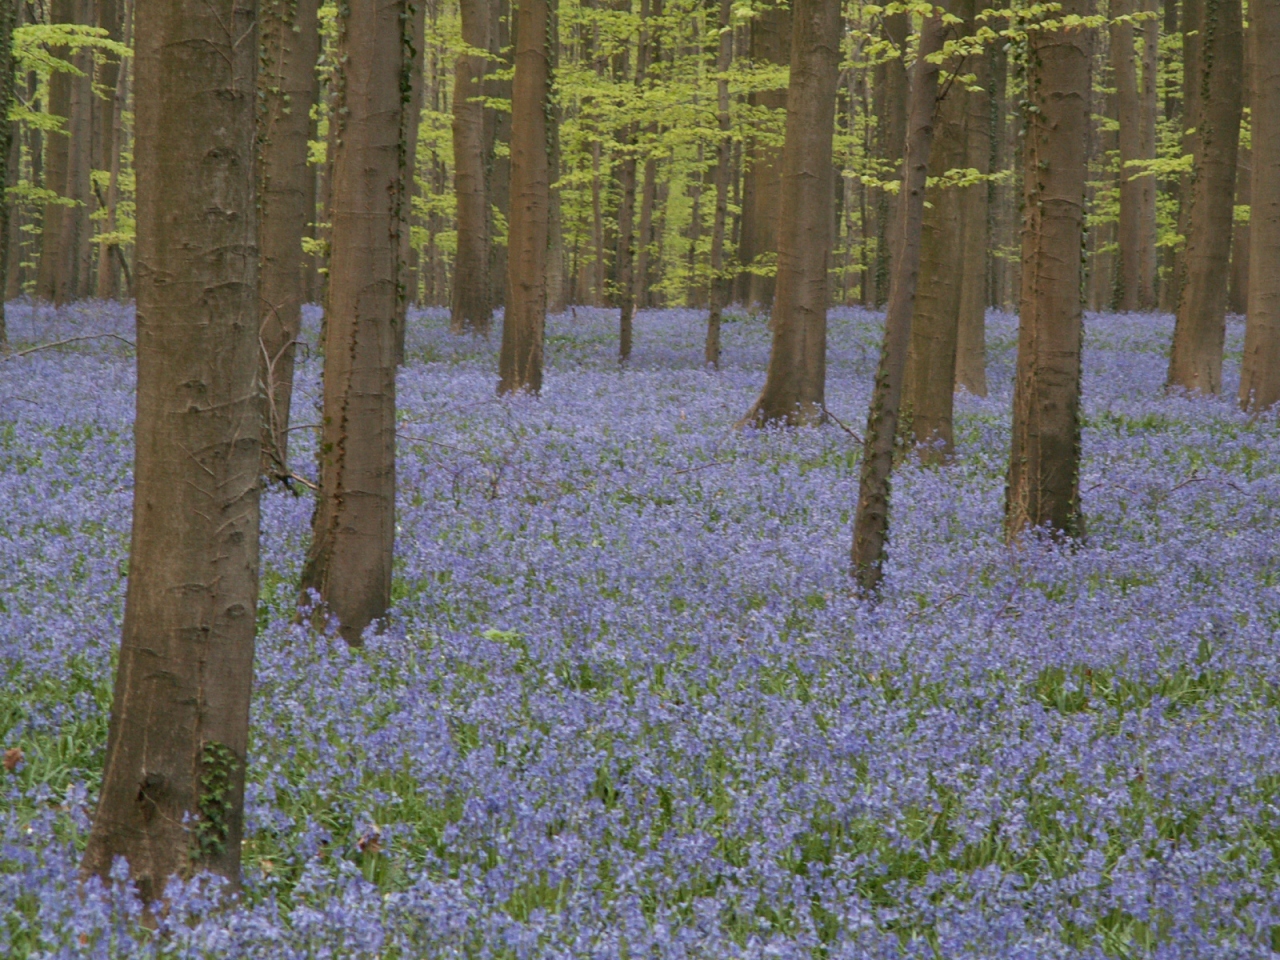 青紫の花の絨毯 ブルーベルが咲き誇る森へようこそ その他の観光地 ベルギー の旅行記 ブログ By 欧州旅行隊さん フォートラベル